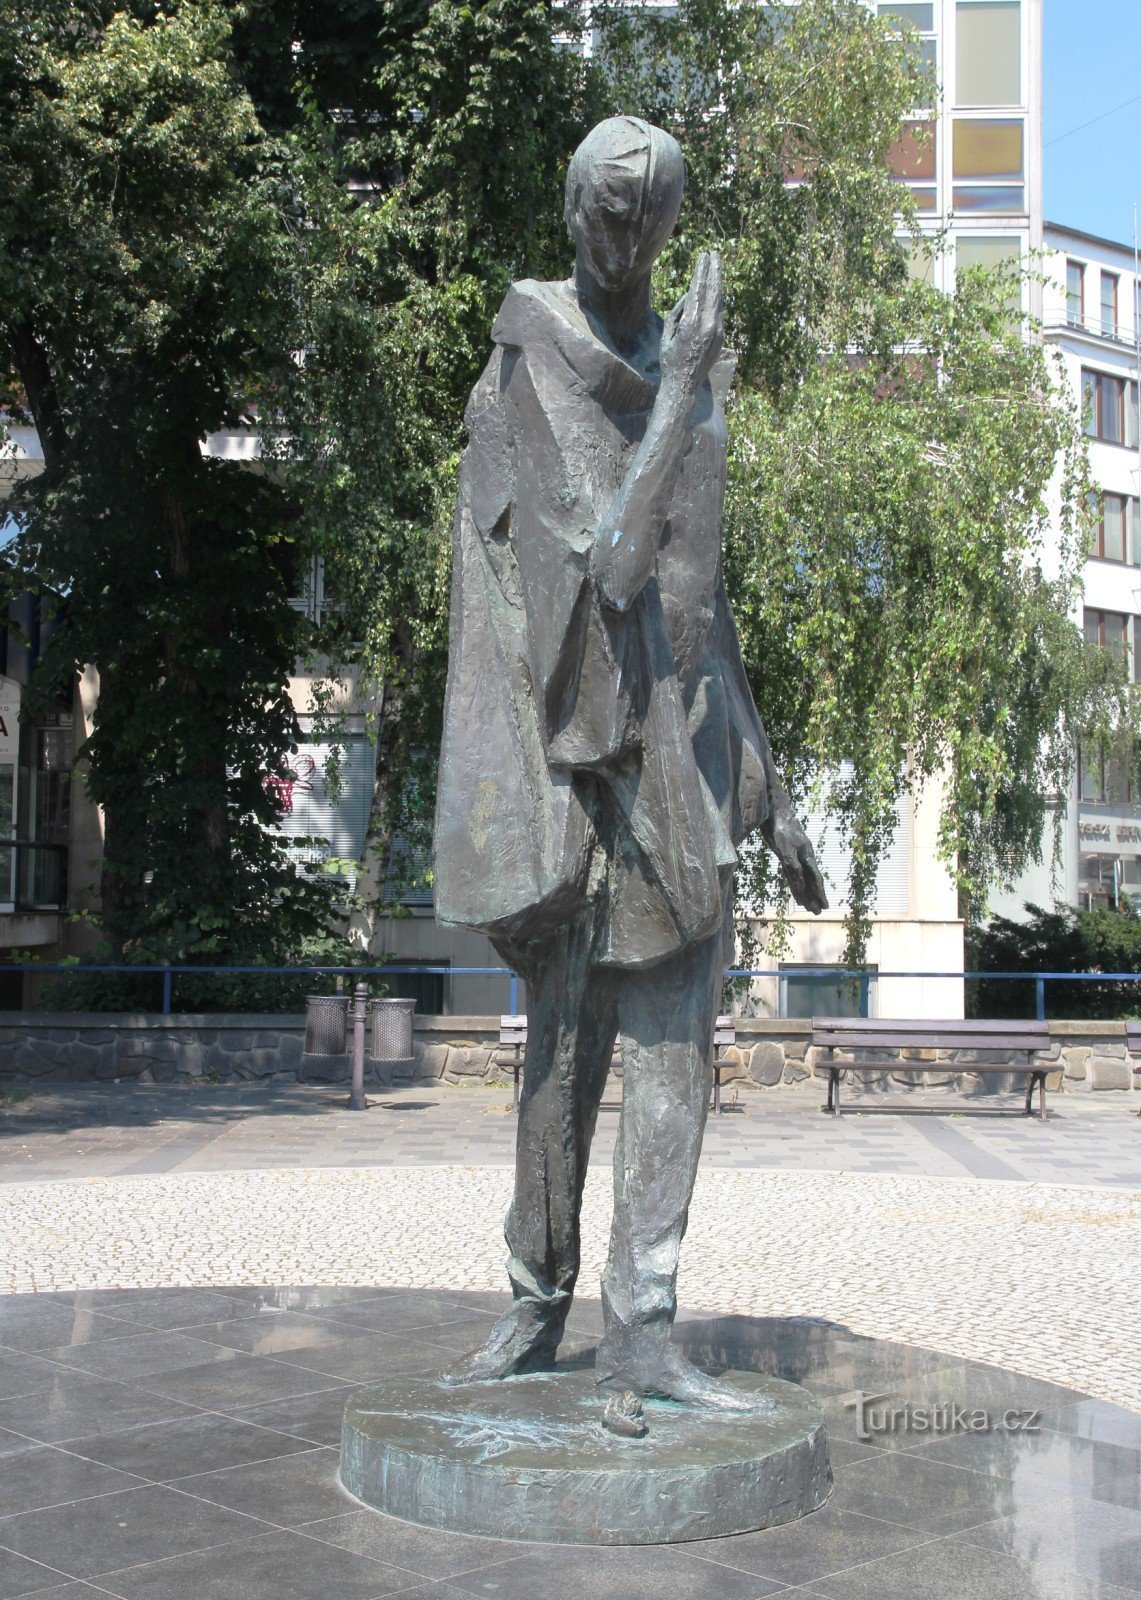 Pomnik Mimy autorstwa Jiří Marka przed budynkiem Białego Domu